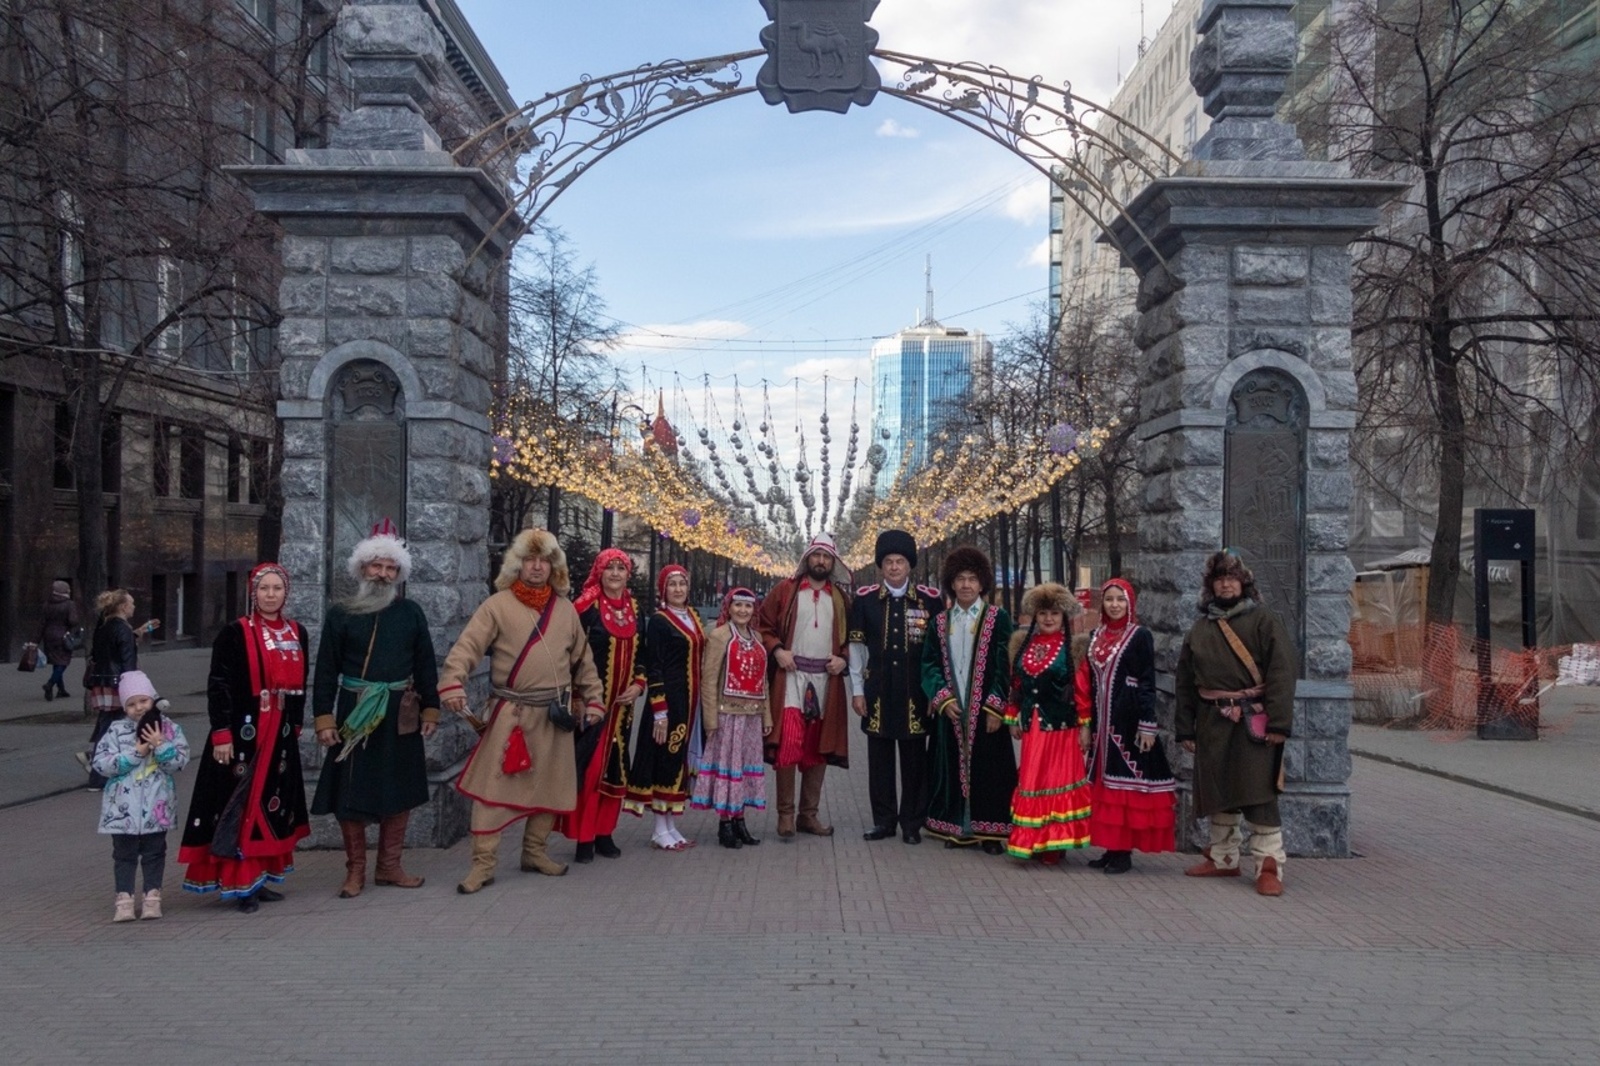 Накануне Дня национального костюма по главной улице Челябинска прошлись казаки, башкирские воины и красавицы